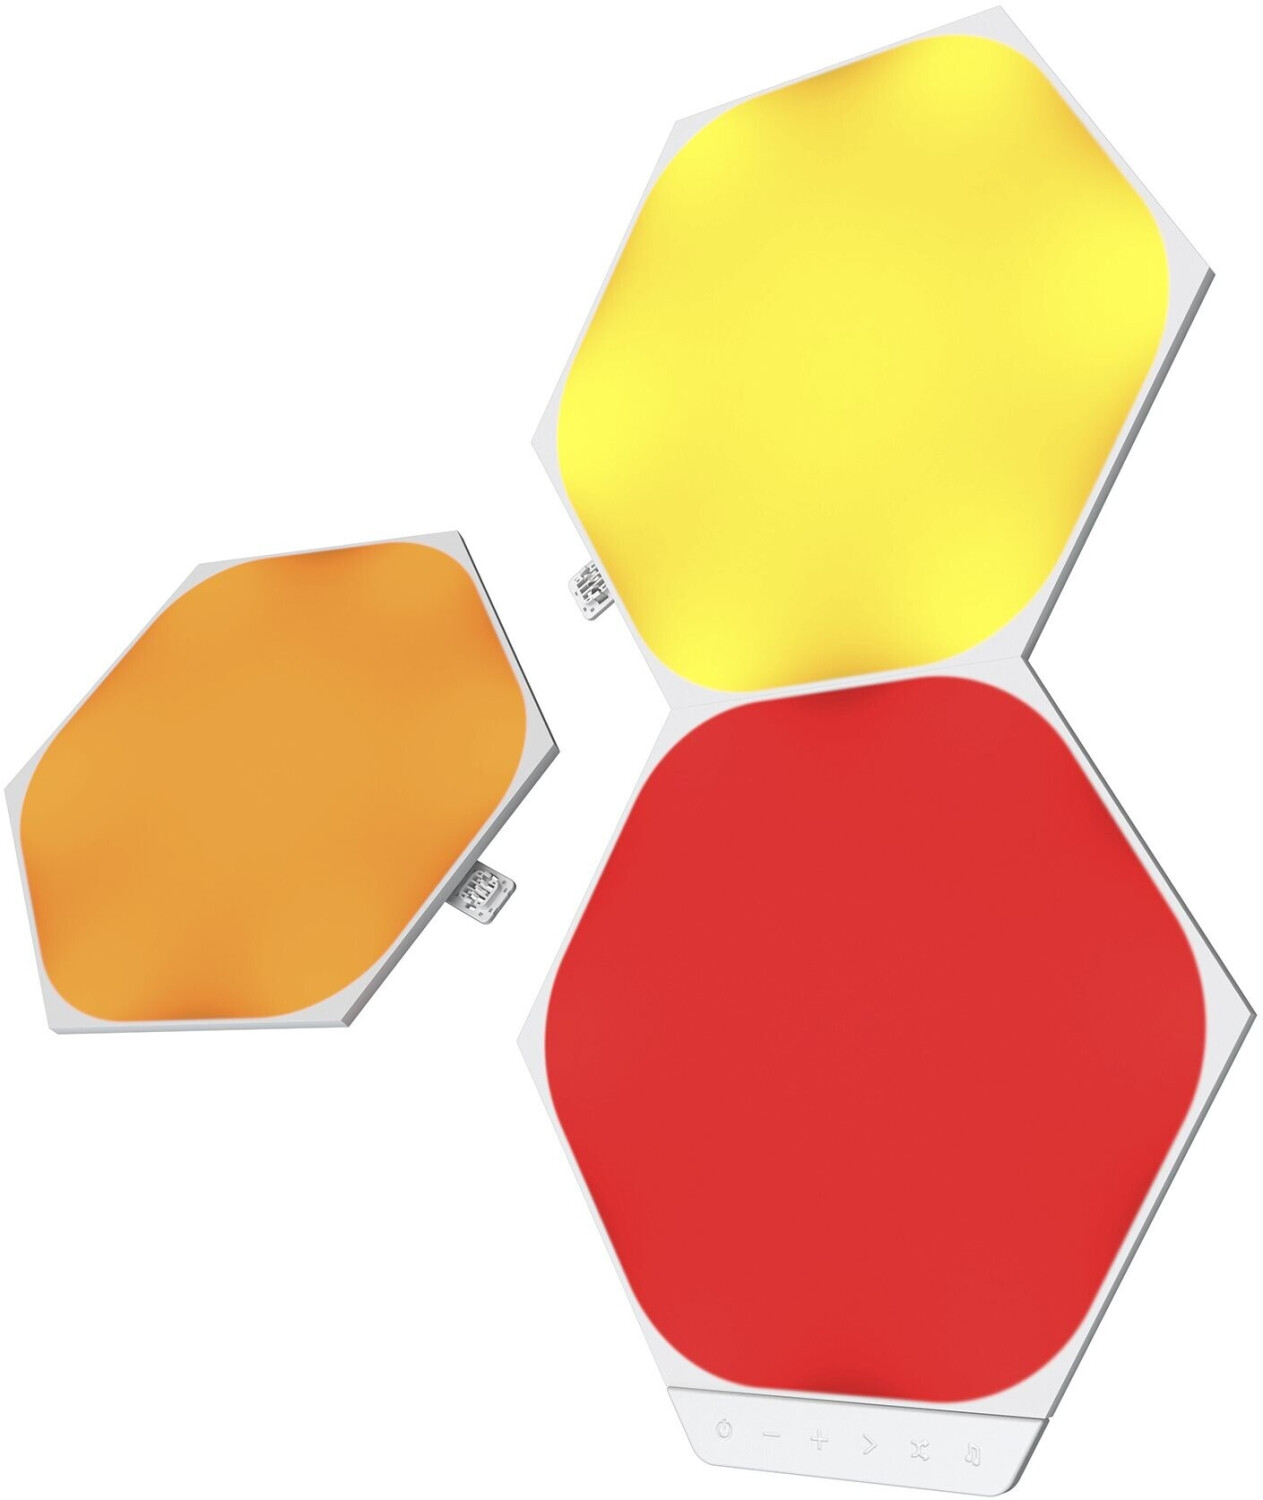 Nanoleaf Shapes Hexagons Erweiterungsset (3-teilig) ab 47,00 € |  Preisvergleich bei